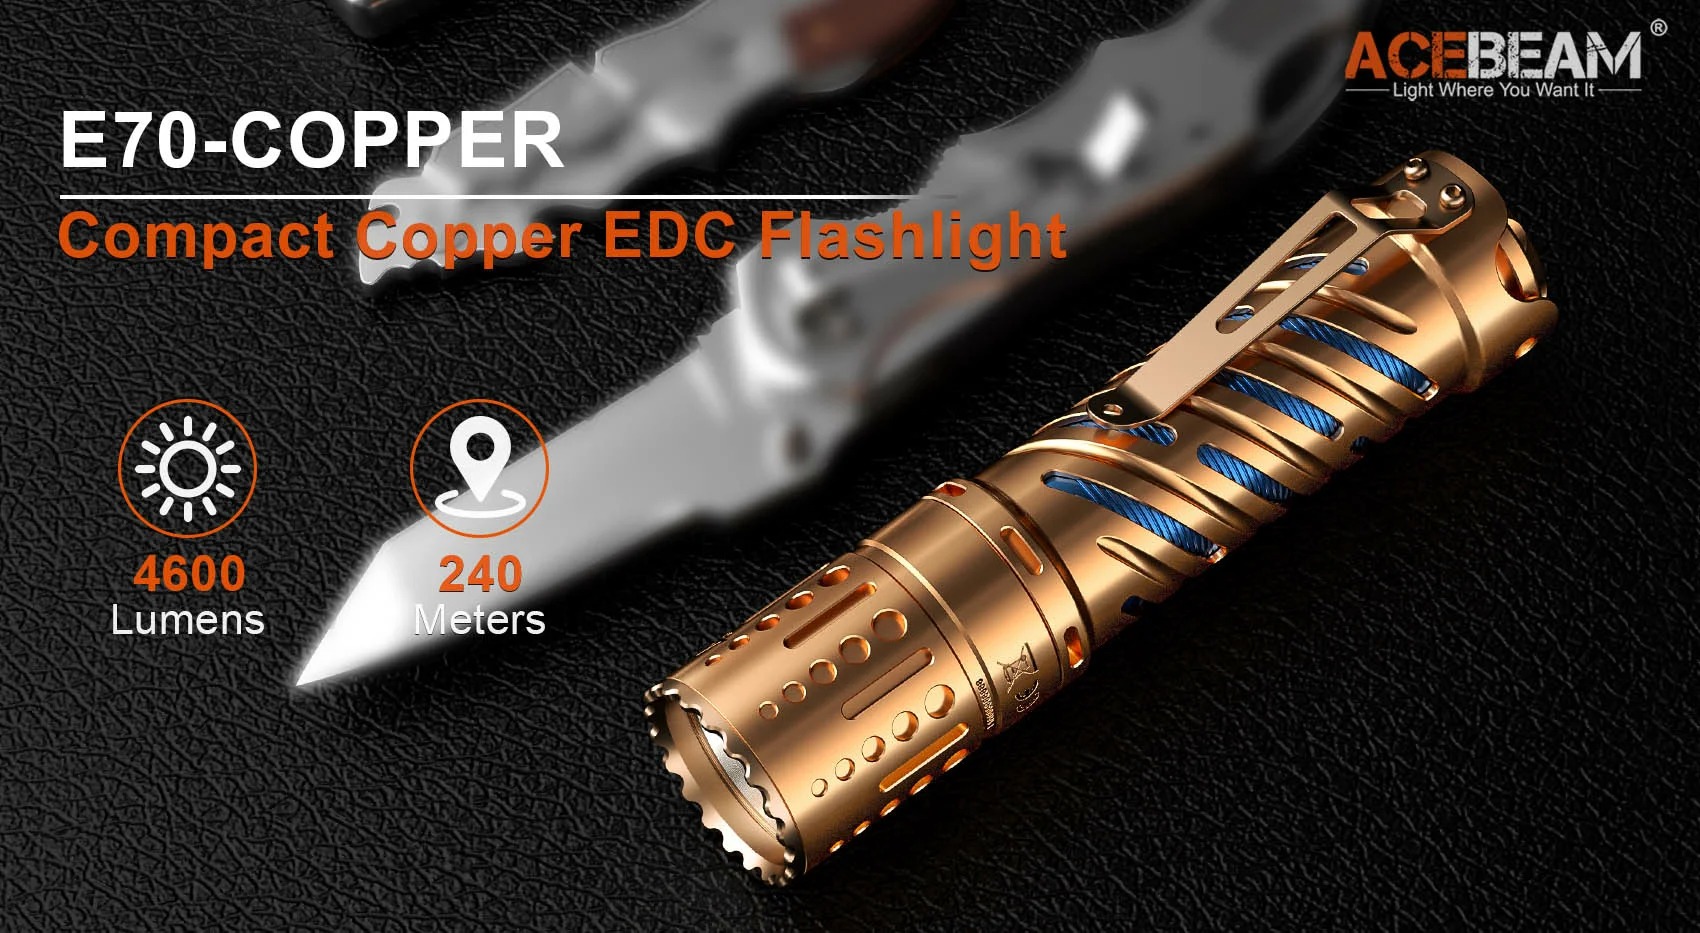 ACEBEAM E70-CU 原生銅 4600流明 強光LED手電筒 21700 EDC 防水手電筒 保固五年 